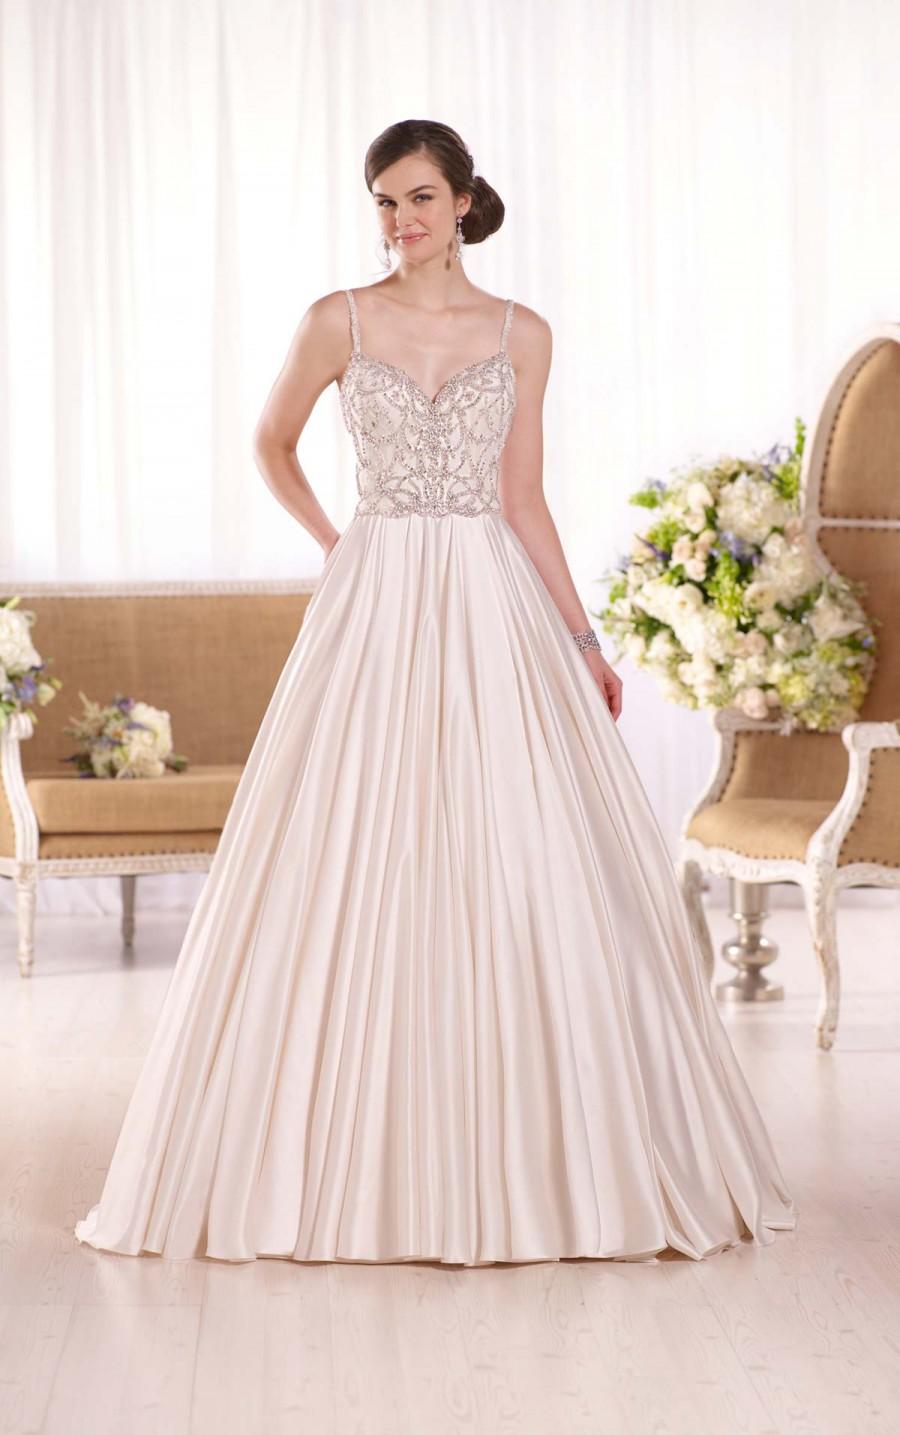 Mariage - Essense of Australia Luxe Satin Bridal Wedding Gown Style D2090